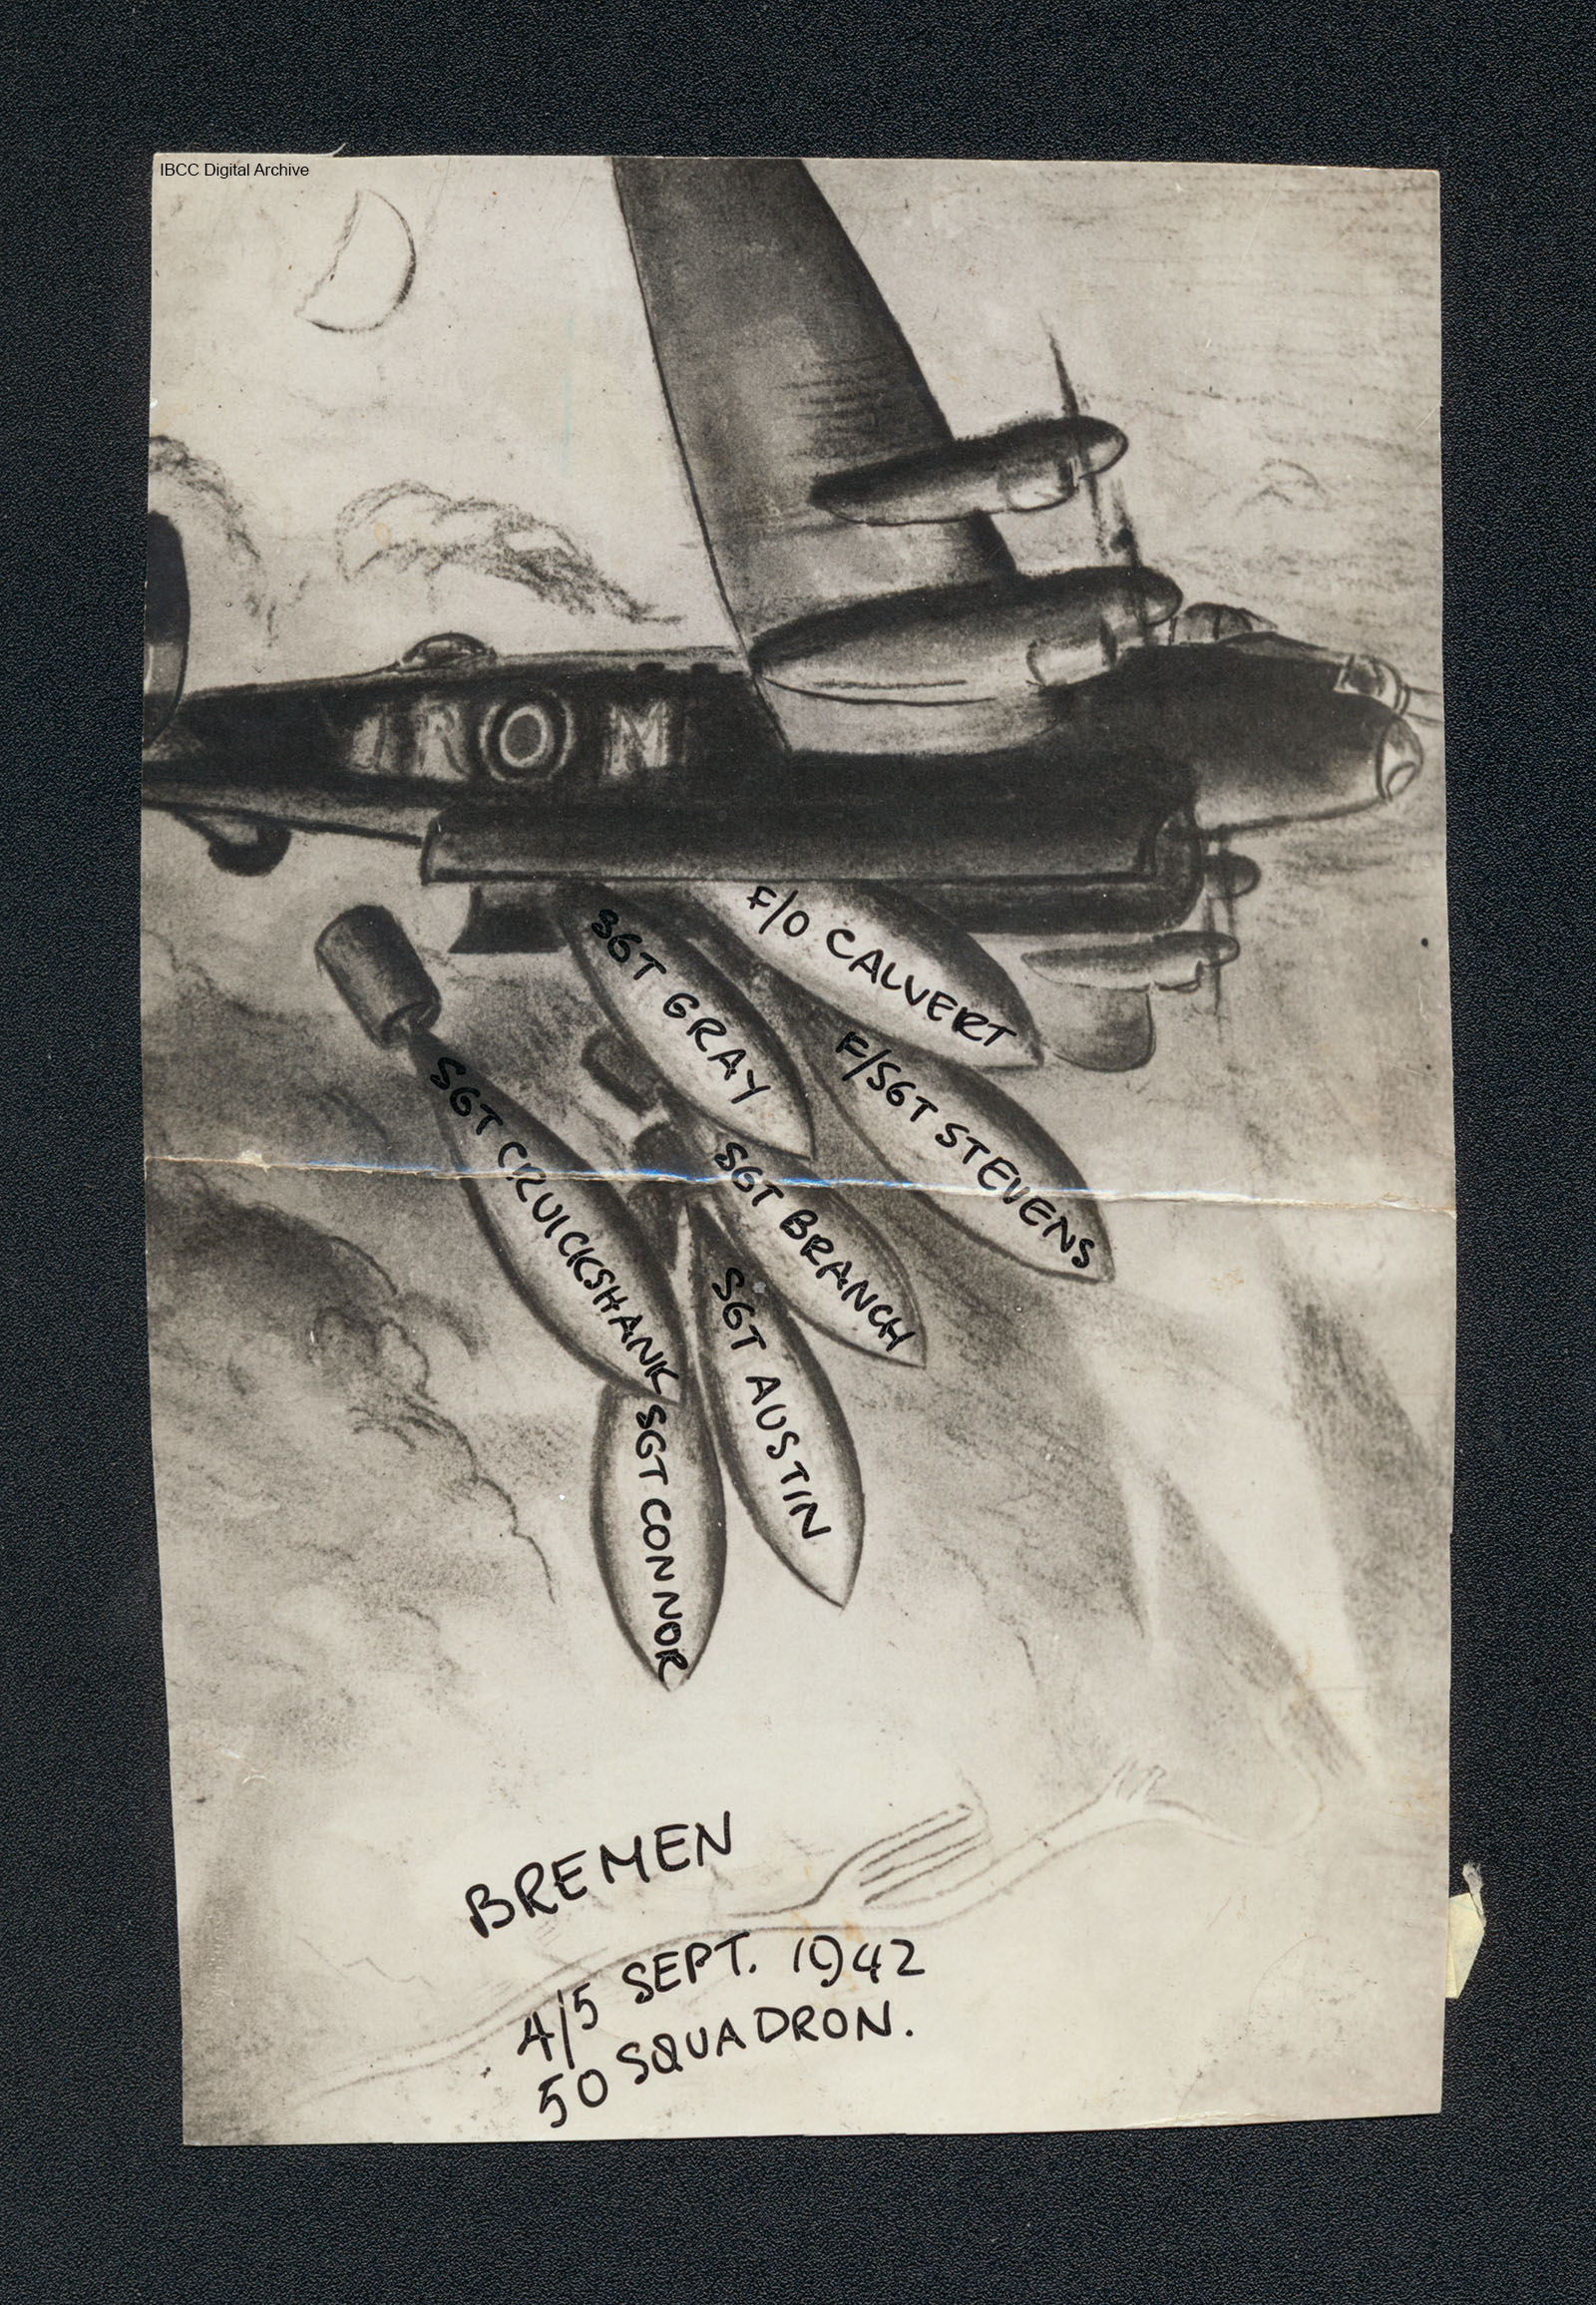 Zeichnung einer Lancaster des No. 50 Squadron mit Namen der Besatzung auf den Bomben.